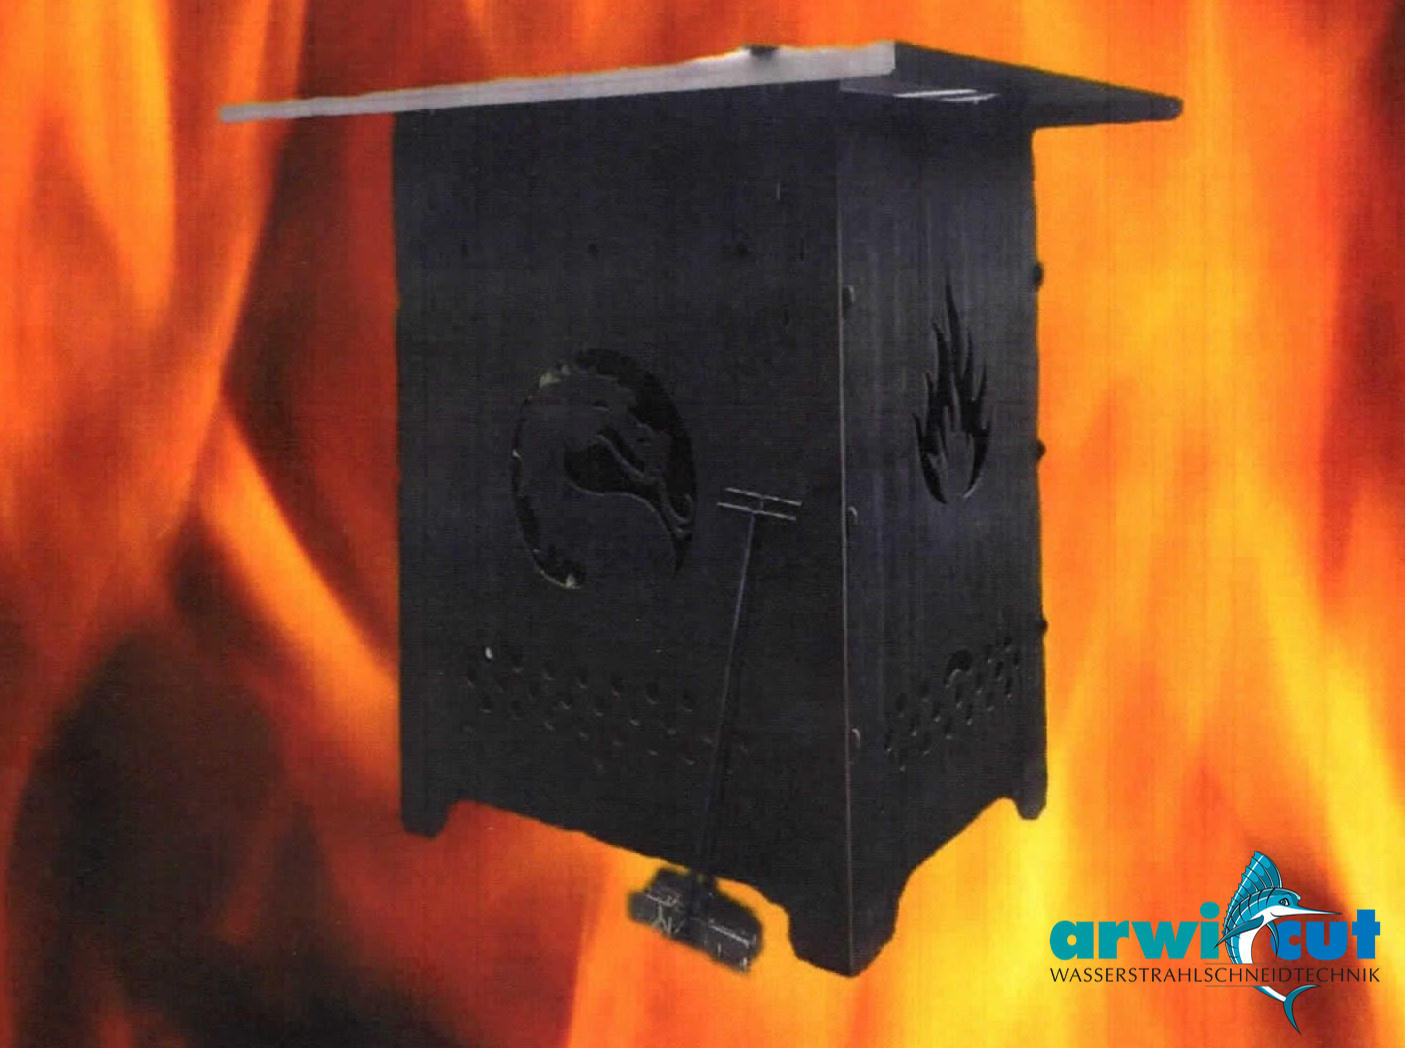 Feuerschale mit Grill ist eine Eigenentwicklung und Fertigung der Firma arwicut.
Sie ist ohne Werkzeug montier- oder demontierbar
Der Grilleinsatz ermöglicht das Auflegen von Grillgut.